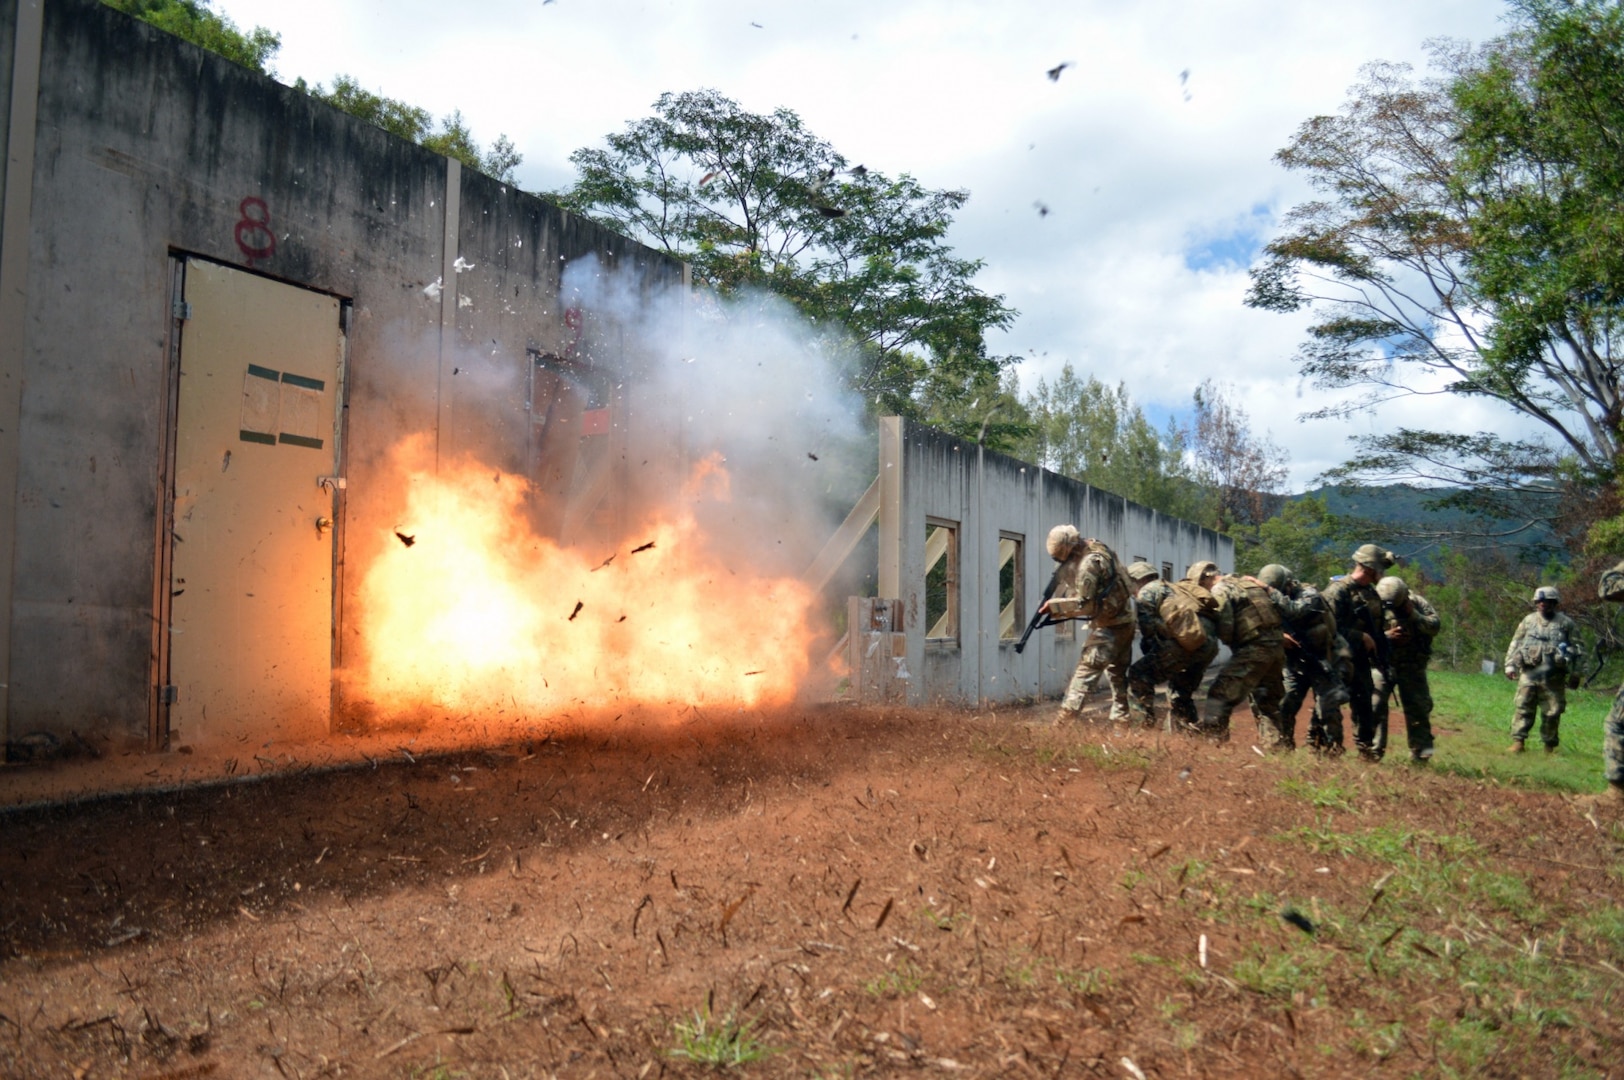 Combat engineers, Marines make a bang with shotguns, demos